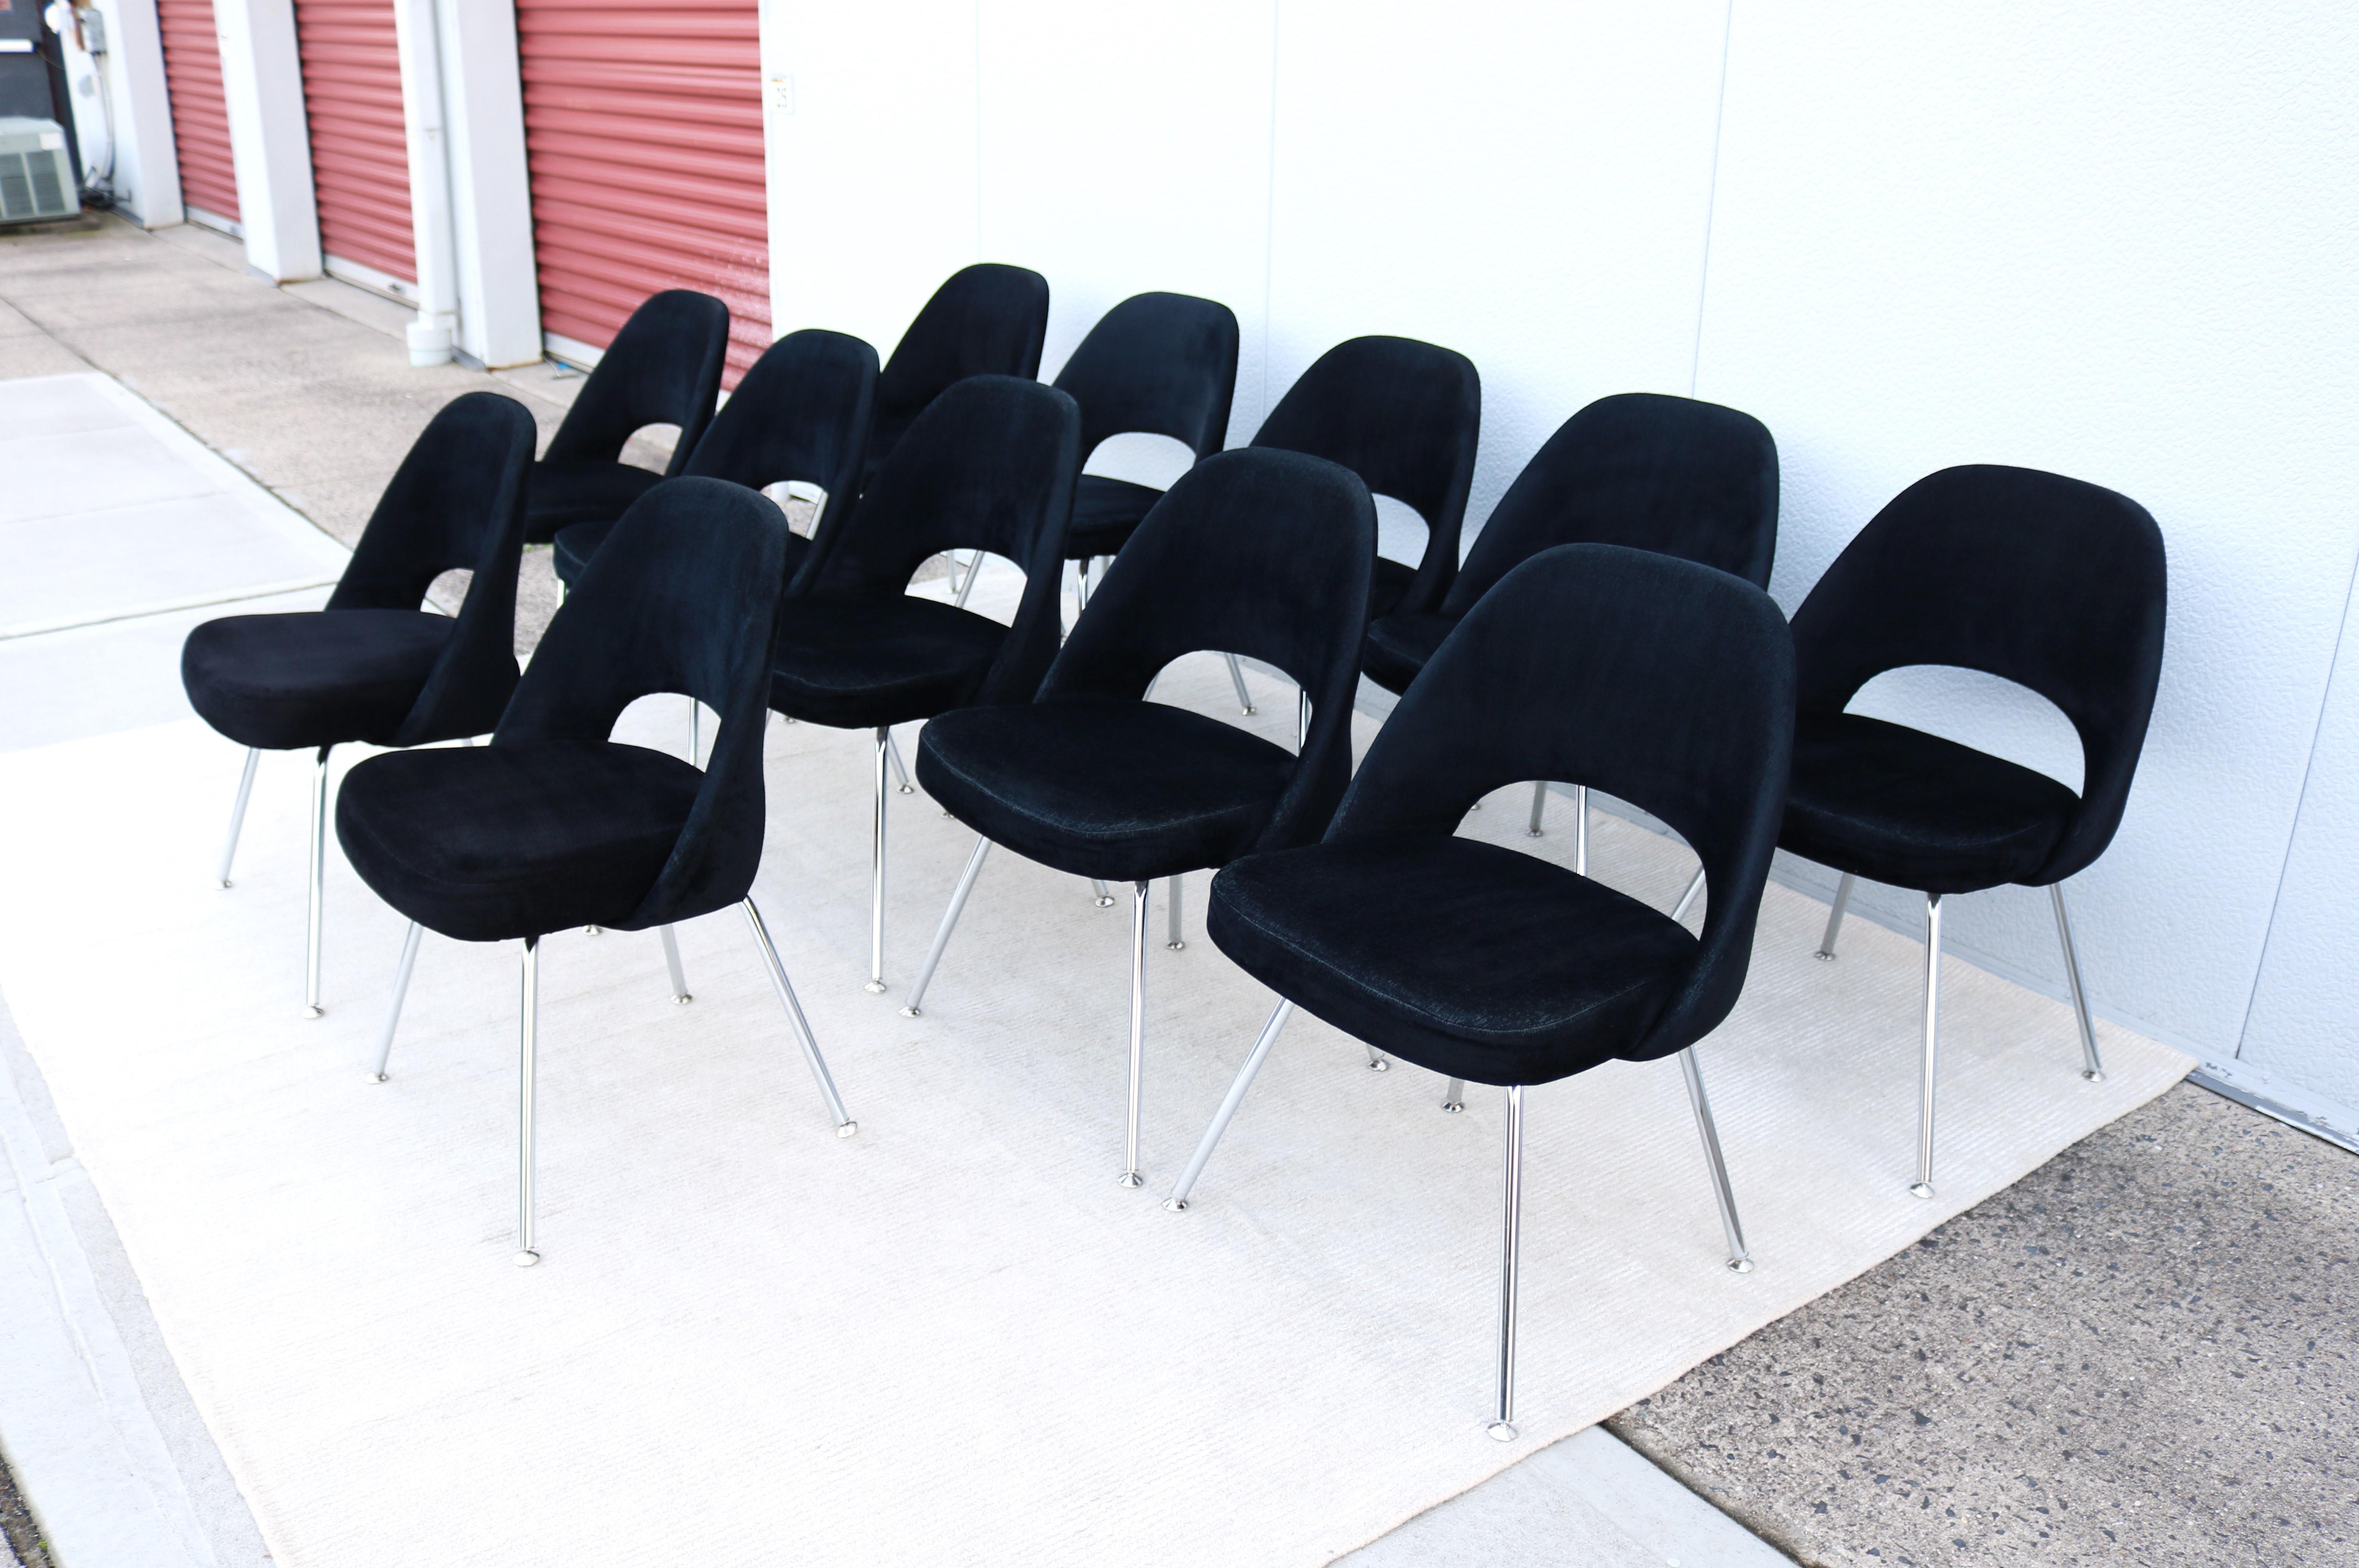 Superbe ensemble de douze fauteuils de direction sans accoudoirs Saarinen de Knoll, authentiquement moderne du milieu du siècle dernier.
L'un des designs les plus populaires de Knoll qui a atteint un confort suprême grâce à la forme de sa coque.
Il